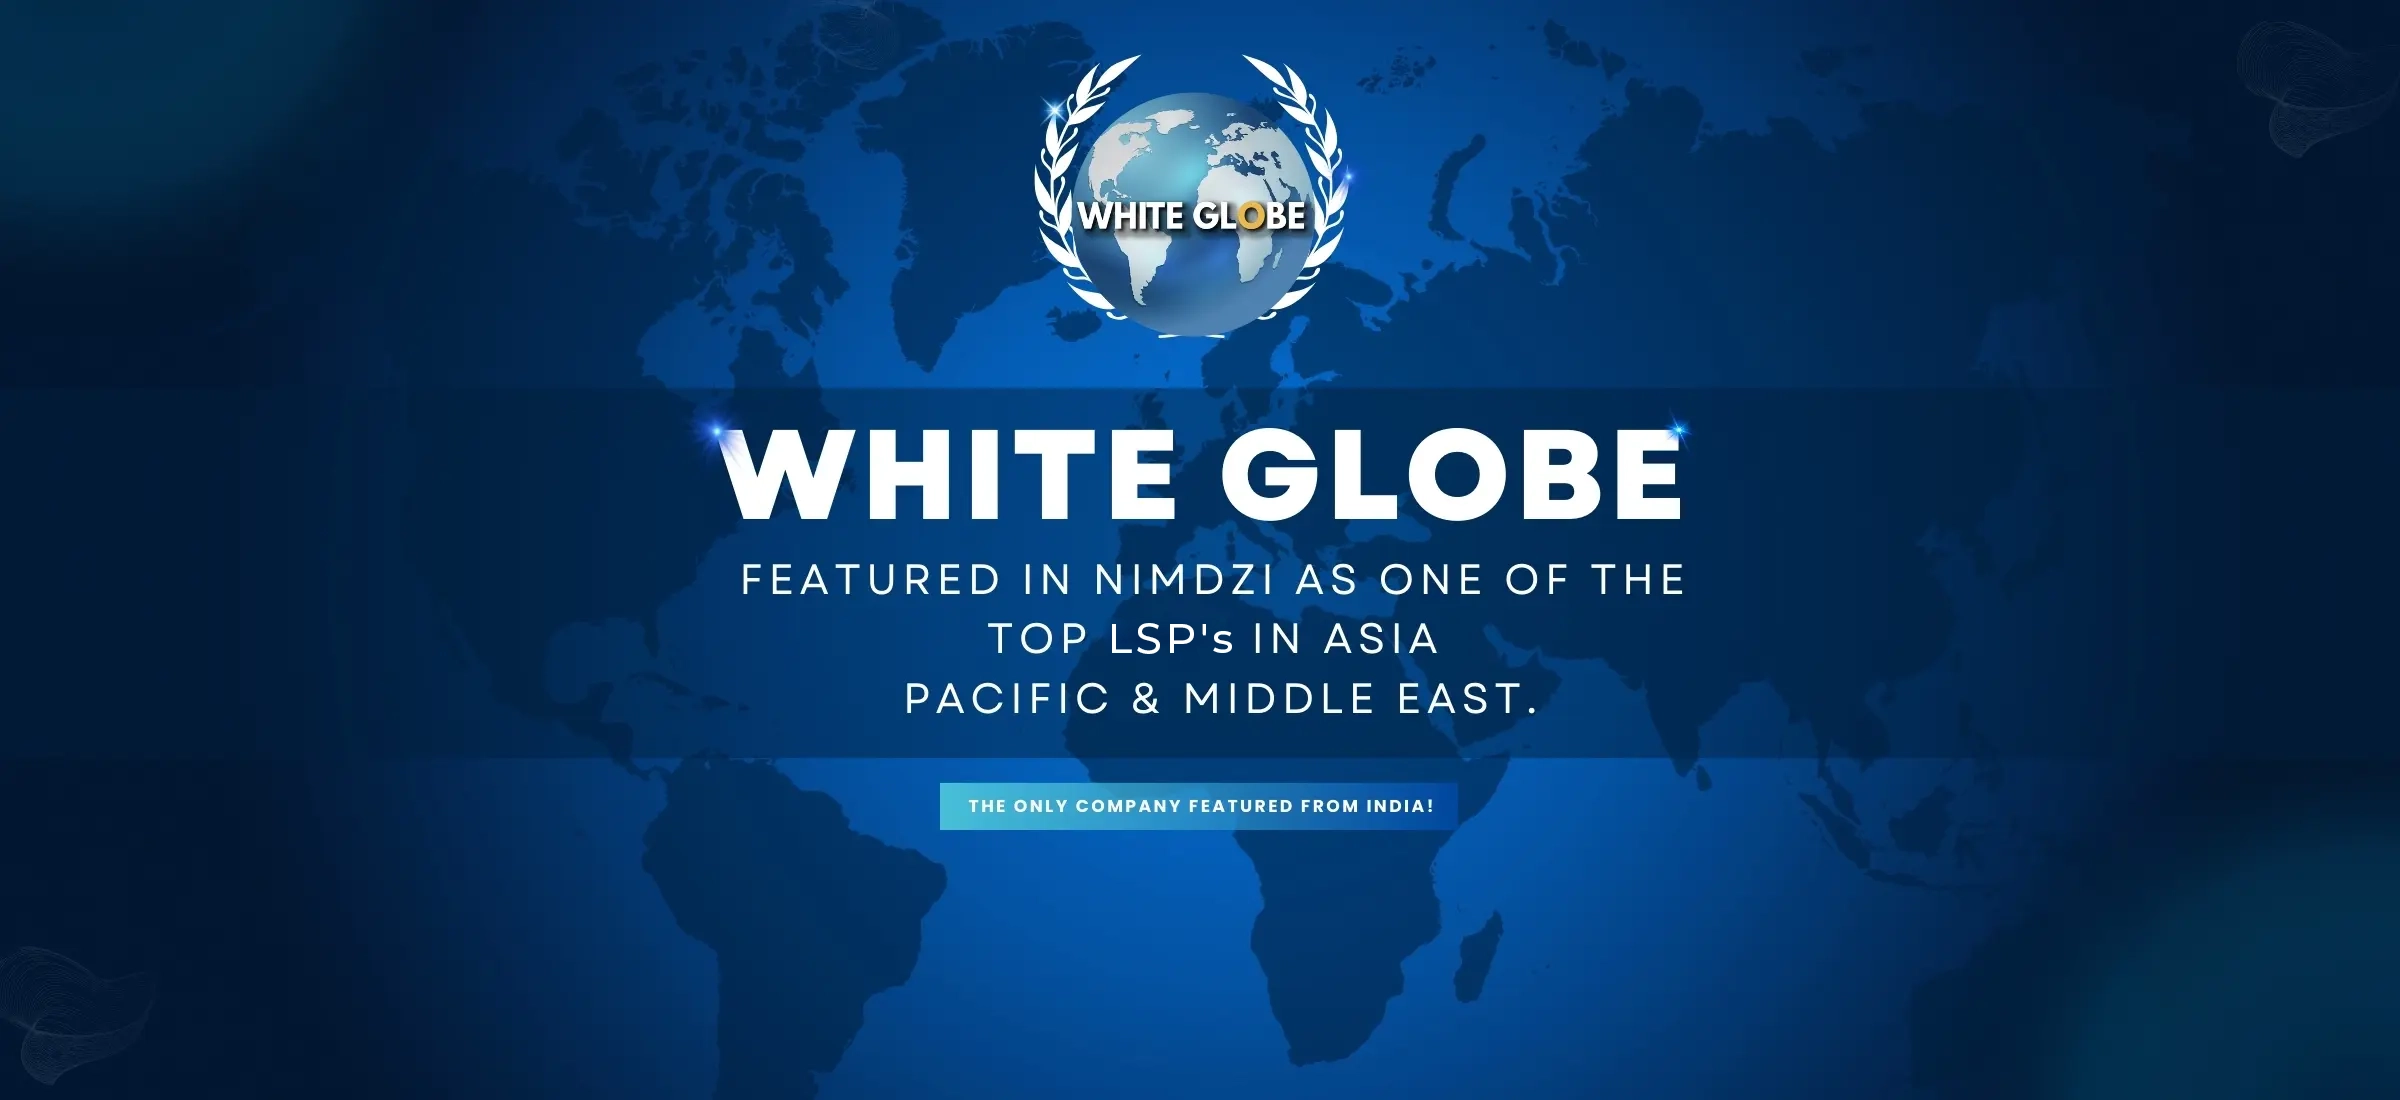 white-globe-in-nimdzi-news-banner